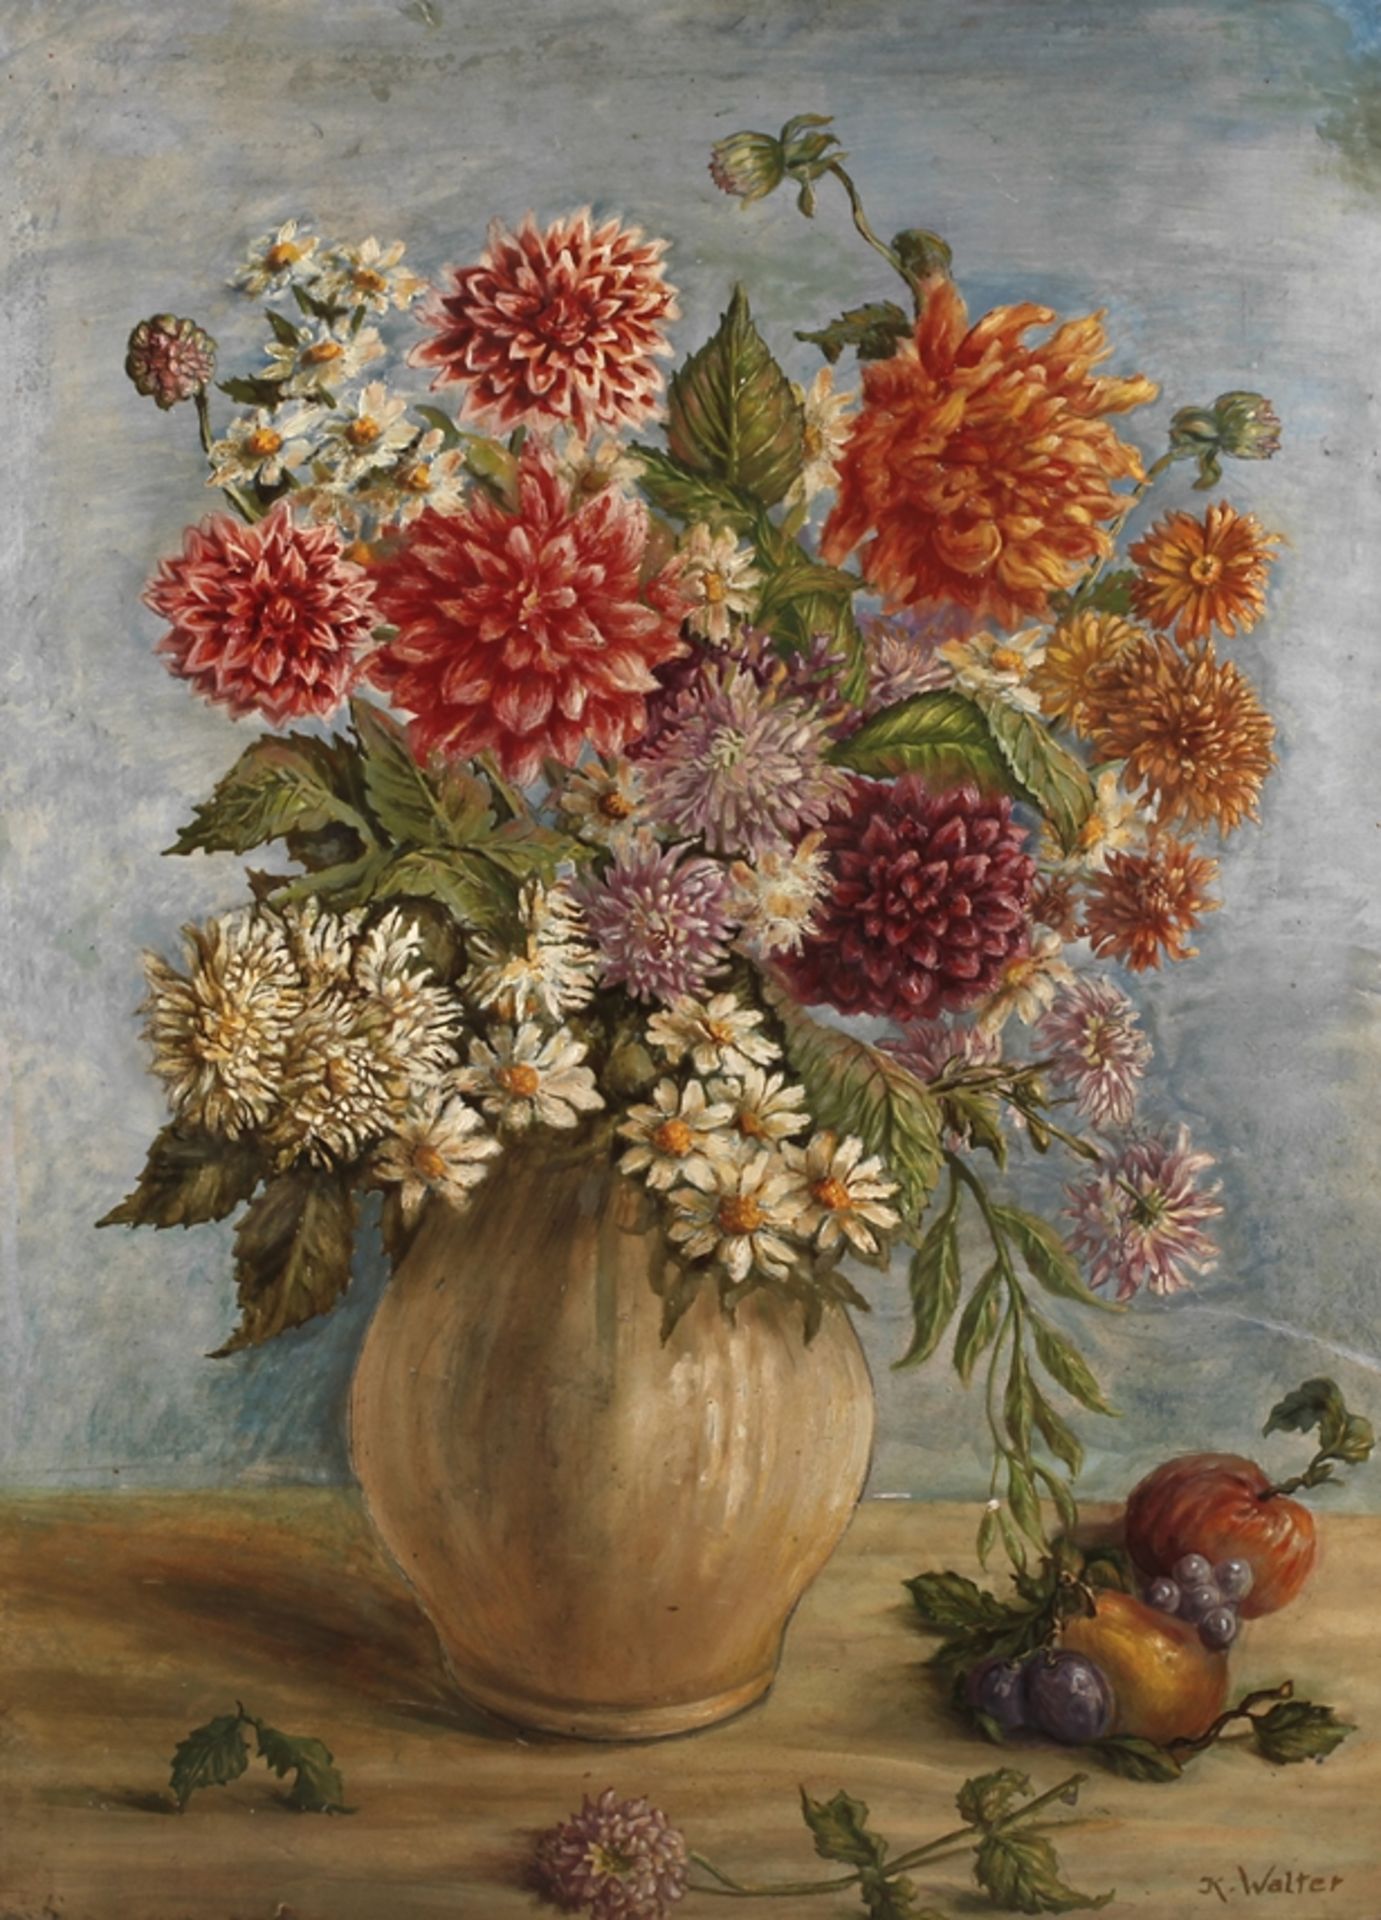 Karl Walter, Sommerblumen und Früchteneben einer Vase mit prächtigem Sommerblumenstrauß liegende